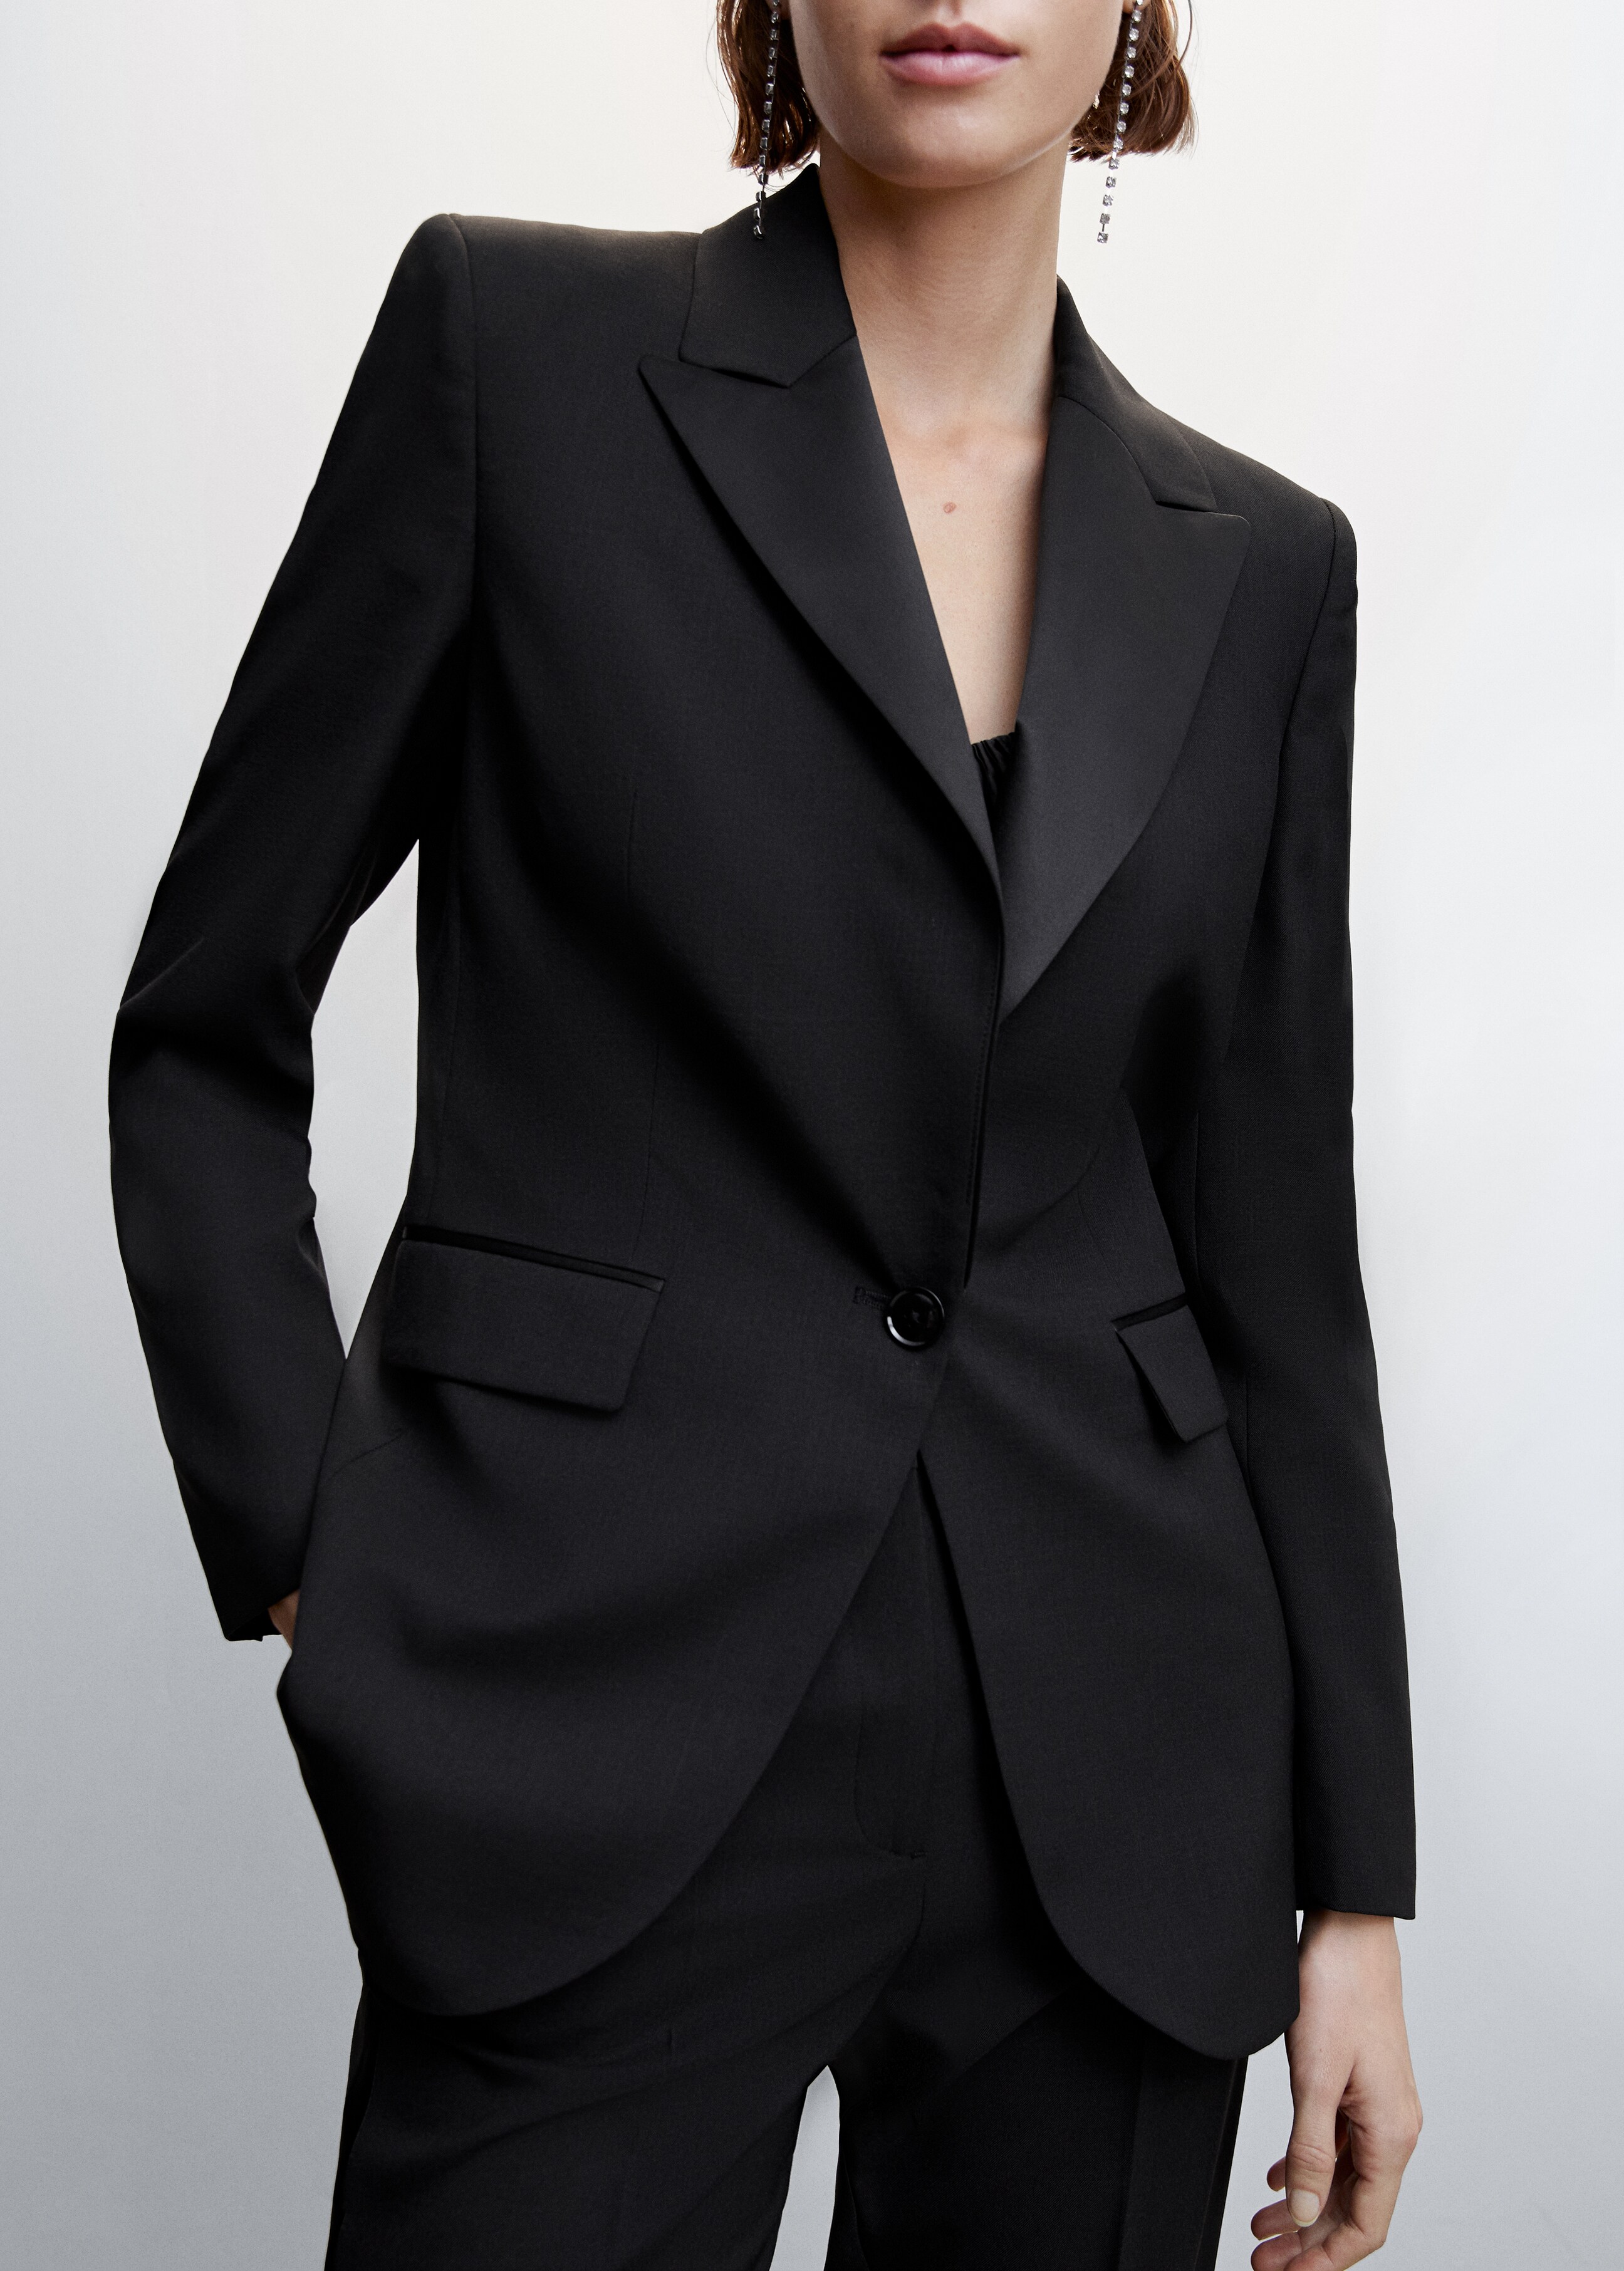 Satin lapels suit blazer - Details of the article 6